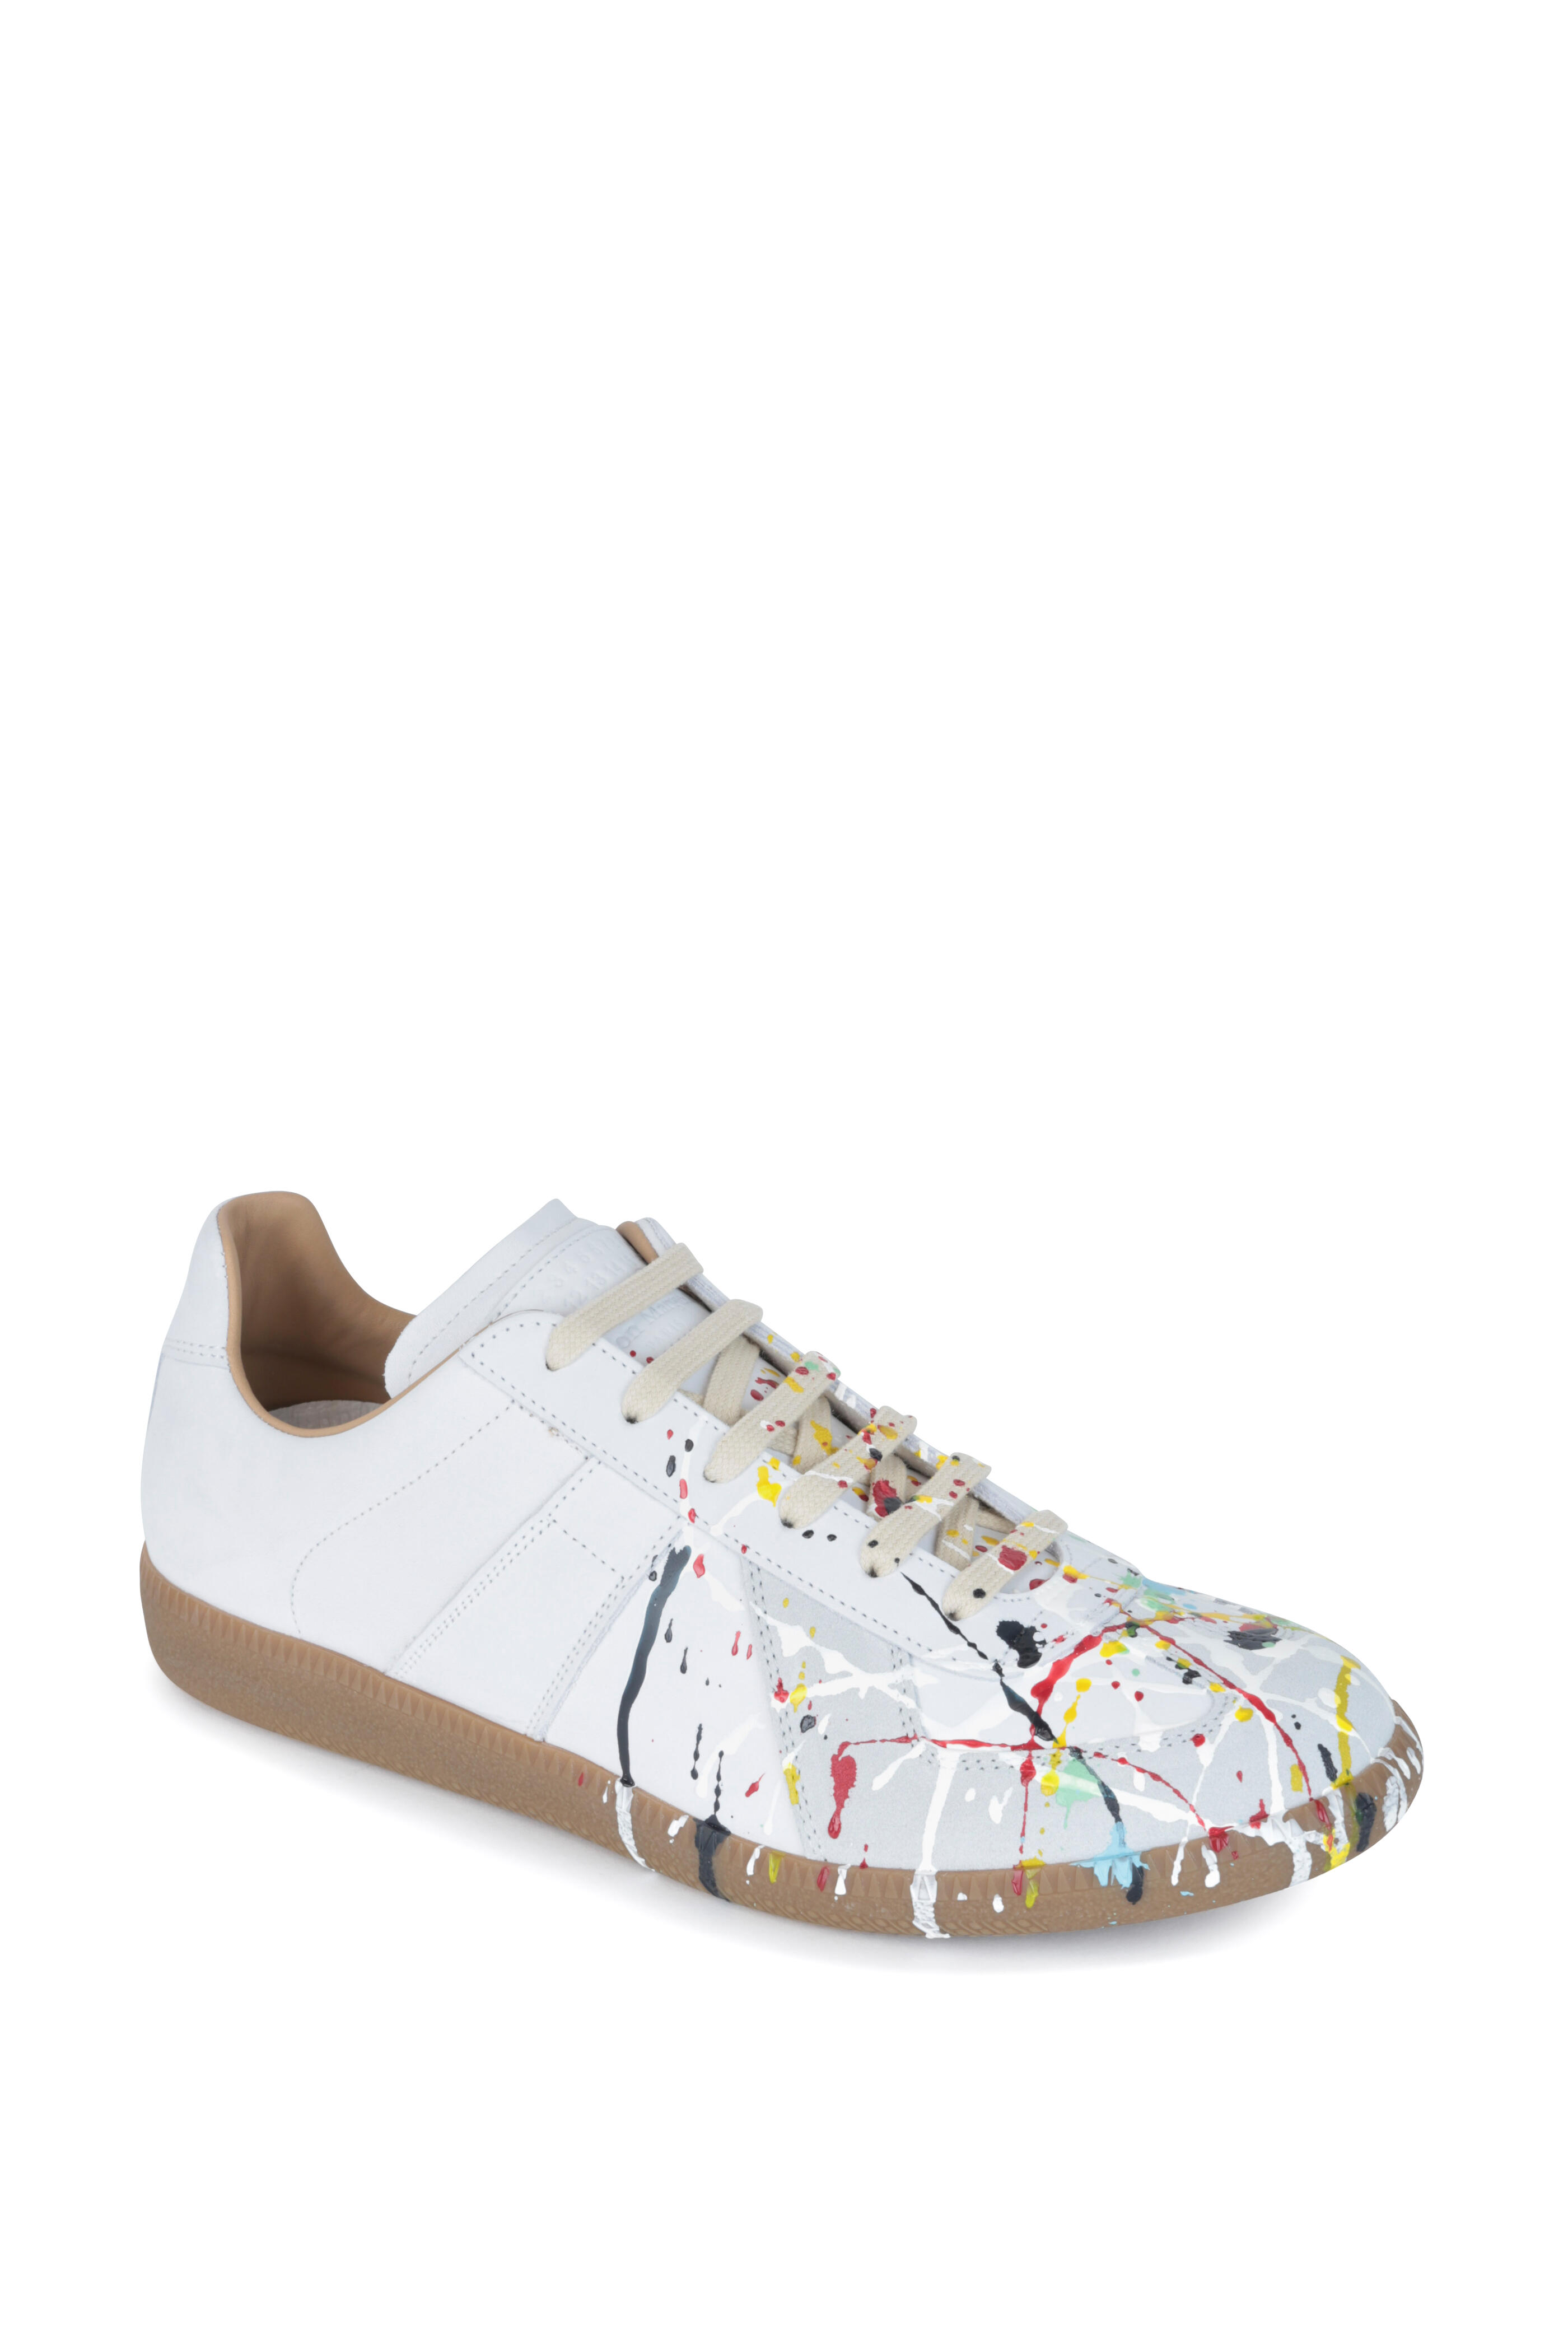 Maison Margiela - Replica White Leather Paint Splatter Sneaker